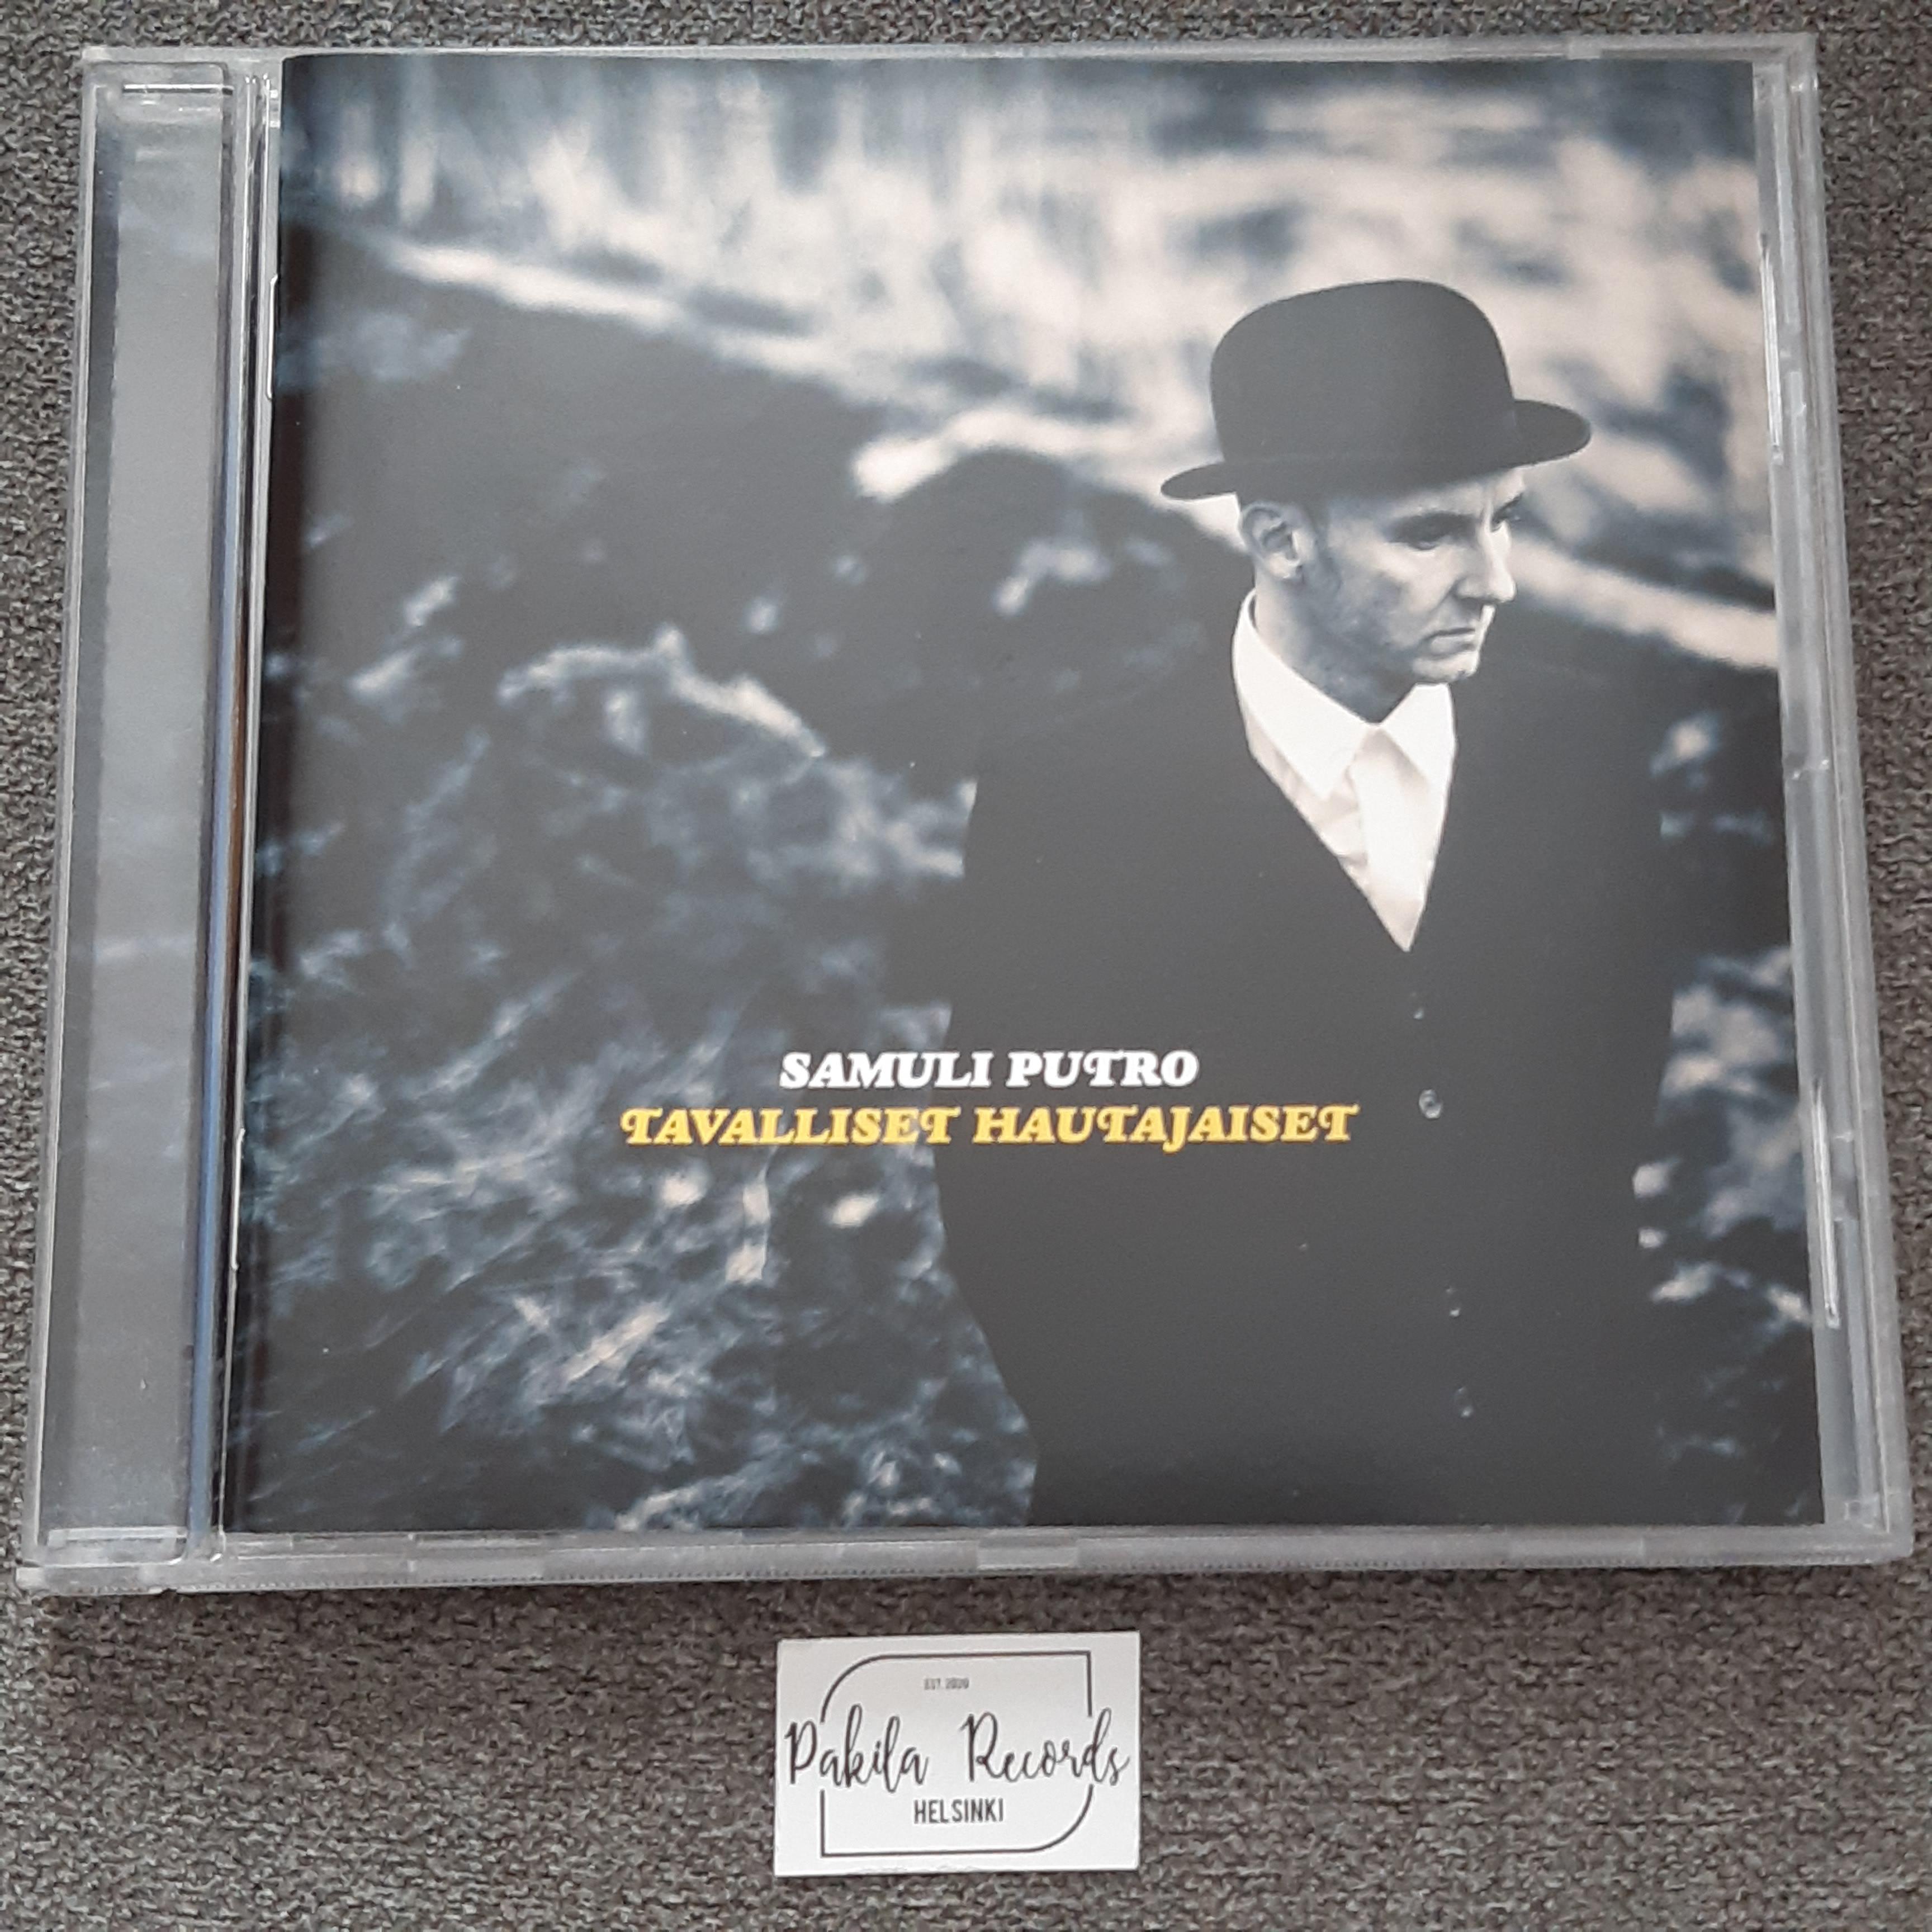 Samuli Putro - Tavalliset hautajaiset - CD (käytetty)